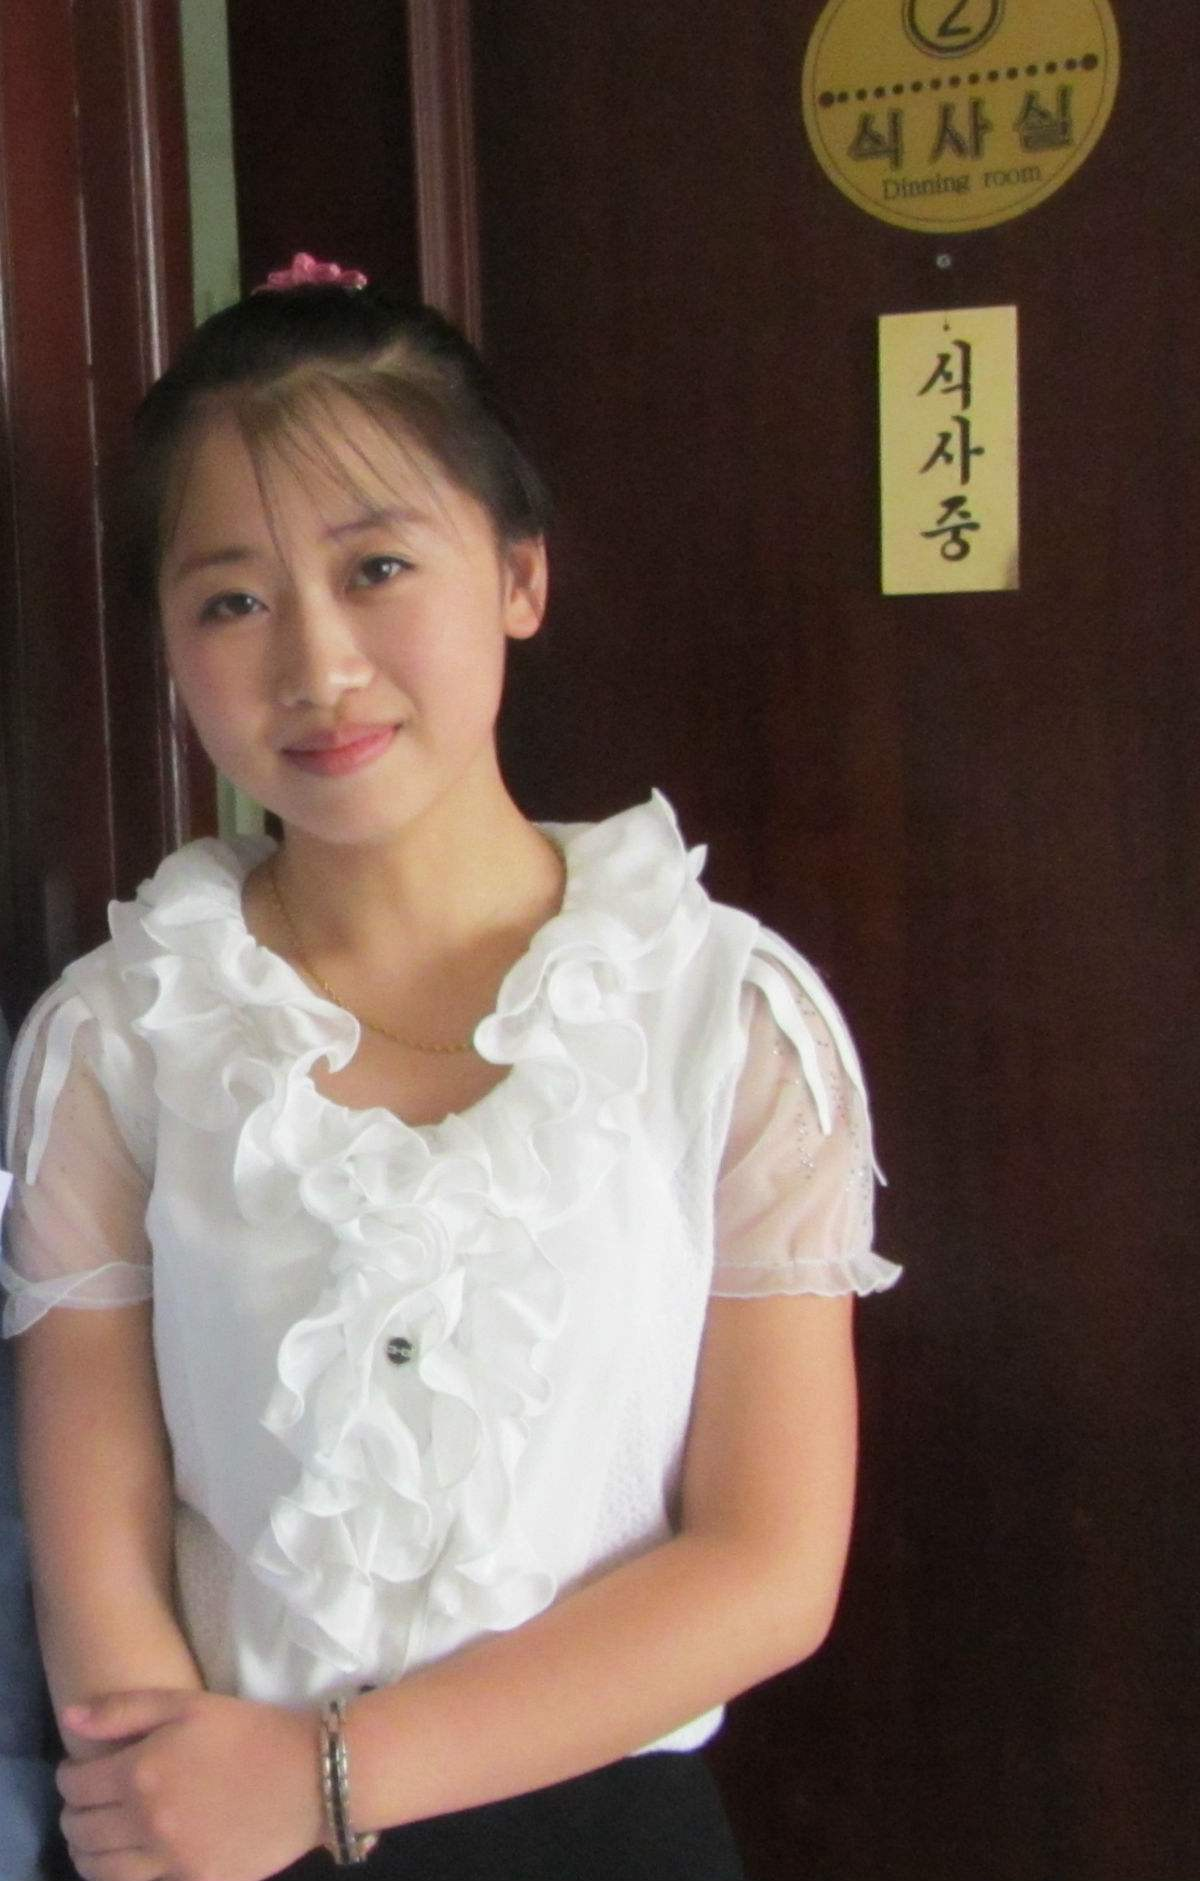 中国网友镜头下的朝鲜女服务员,每一个都长得美丽动人!